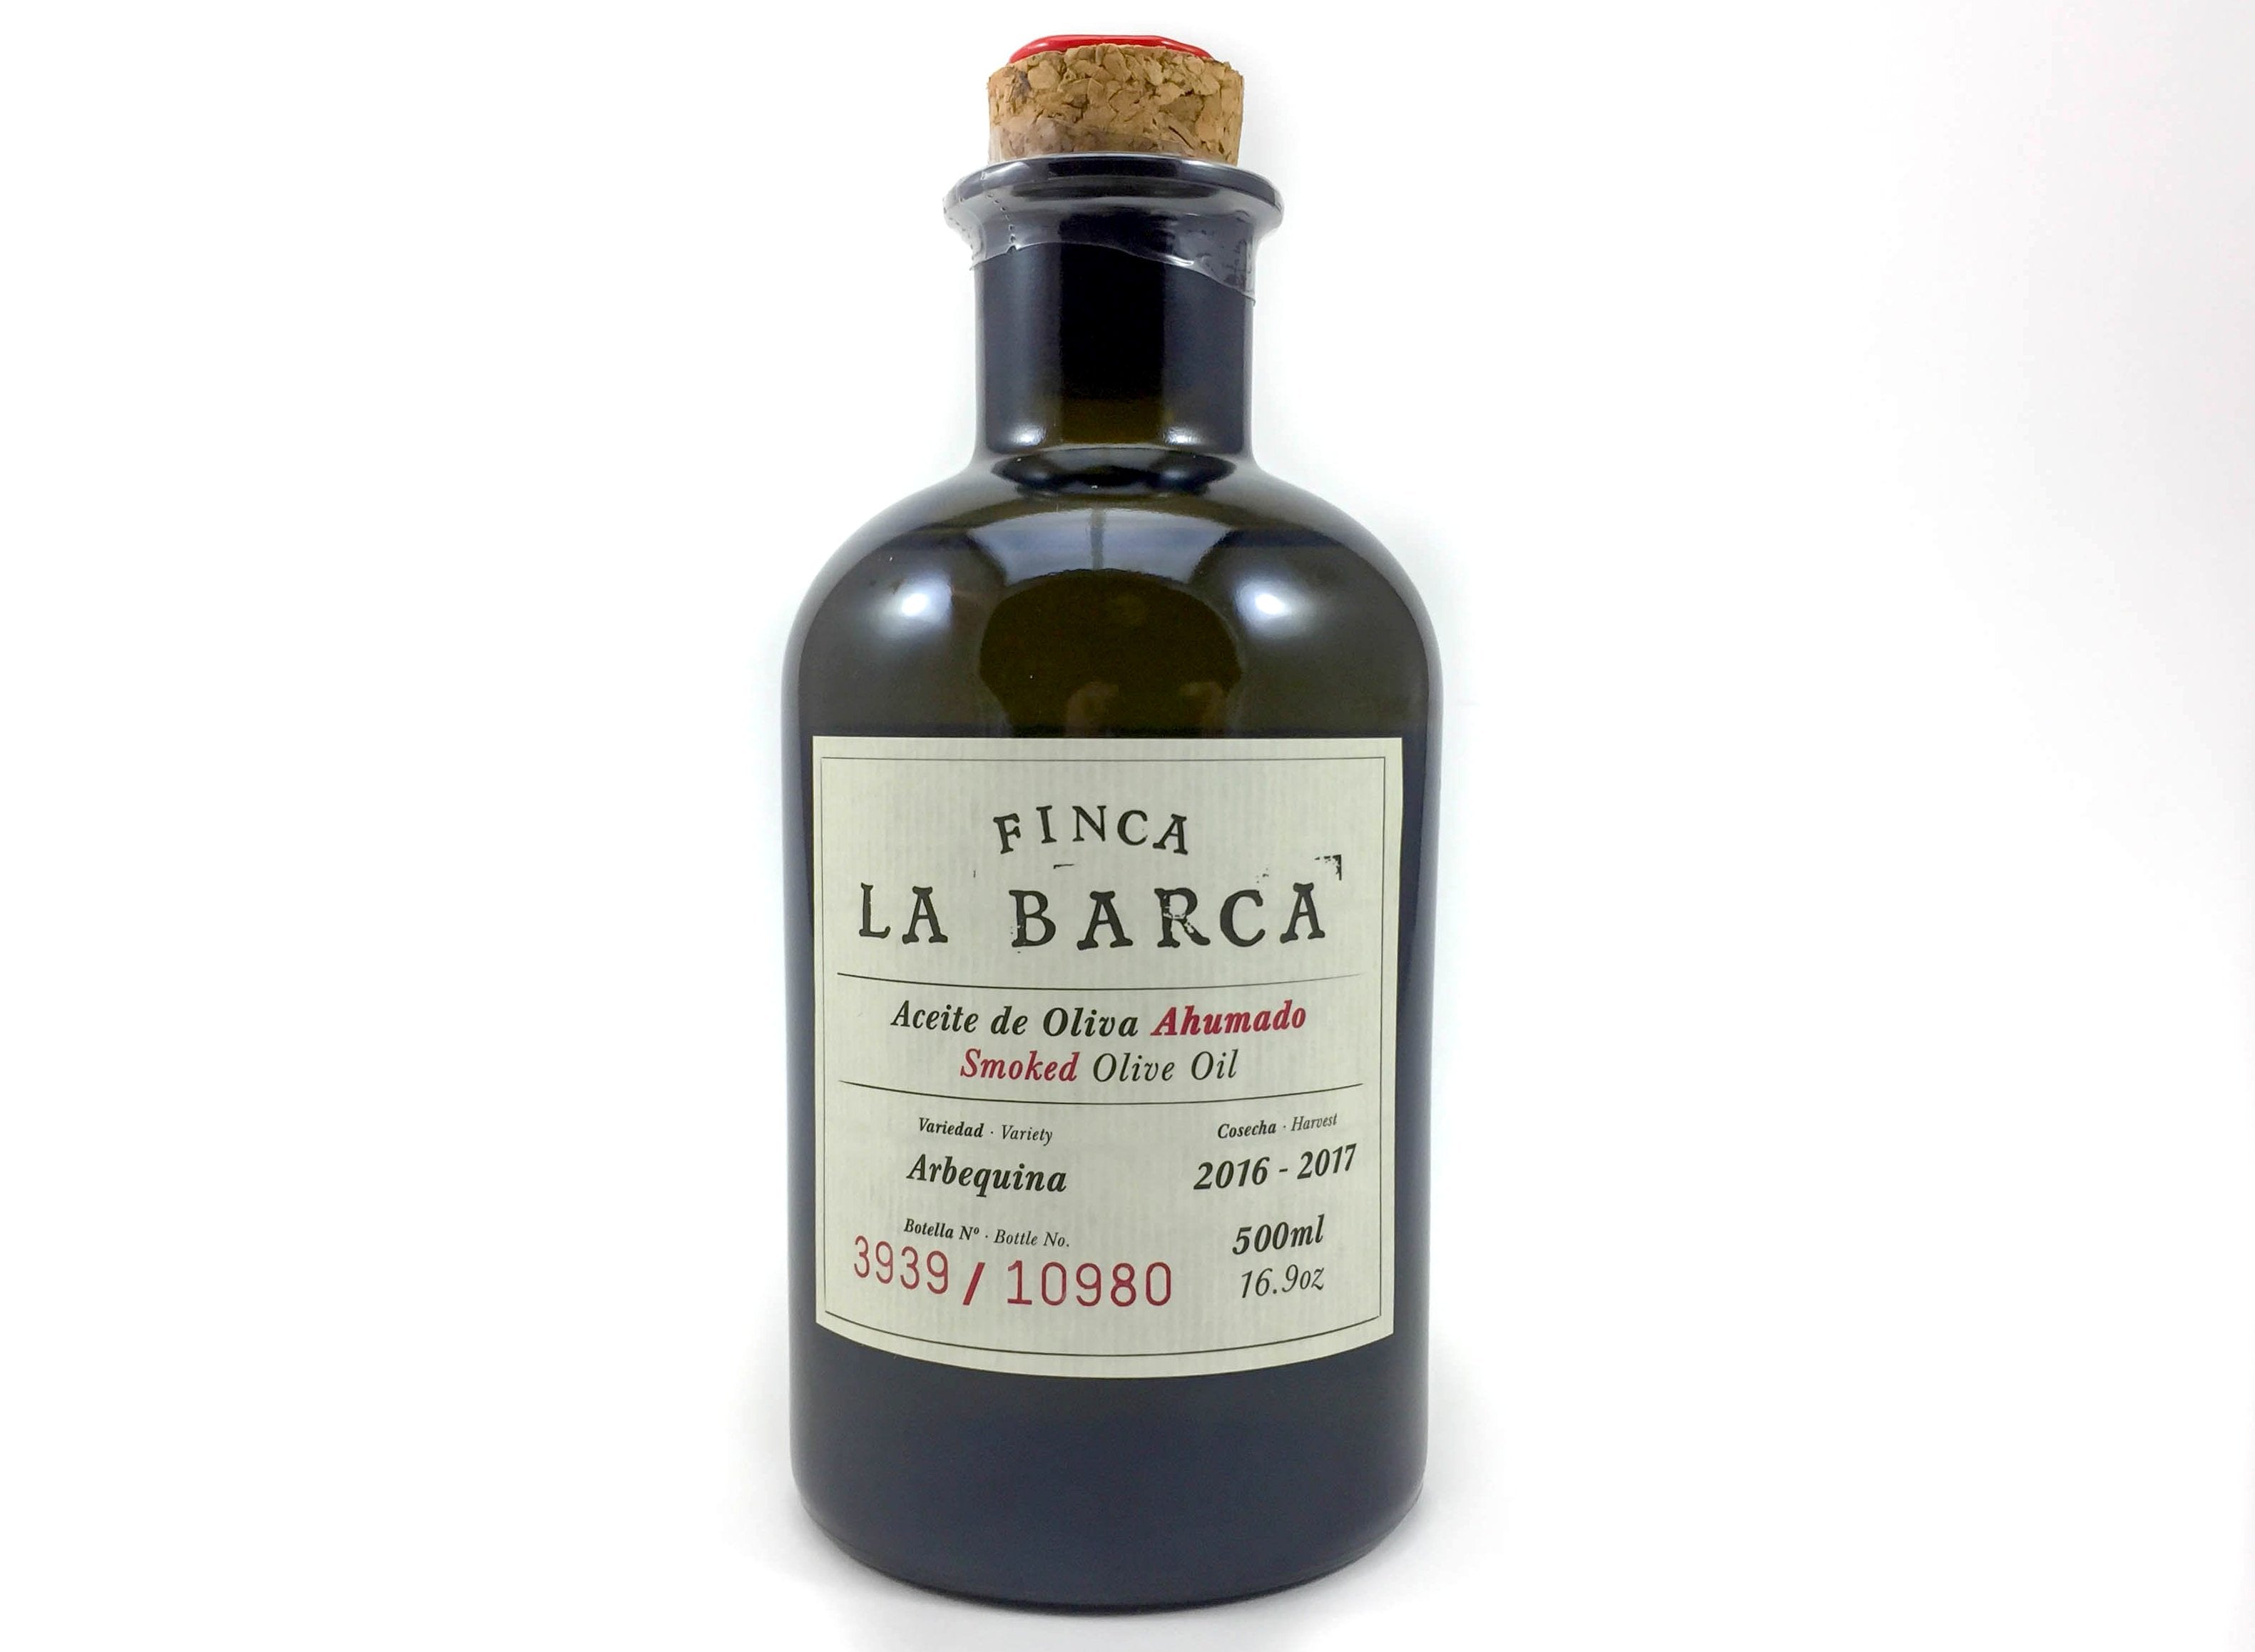 Finca "La Barca" Smoked Olive Oil